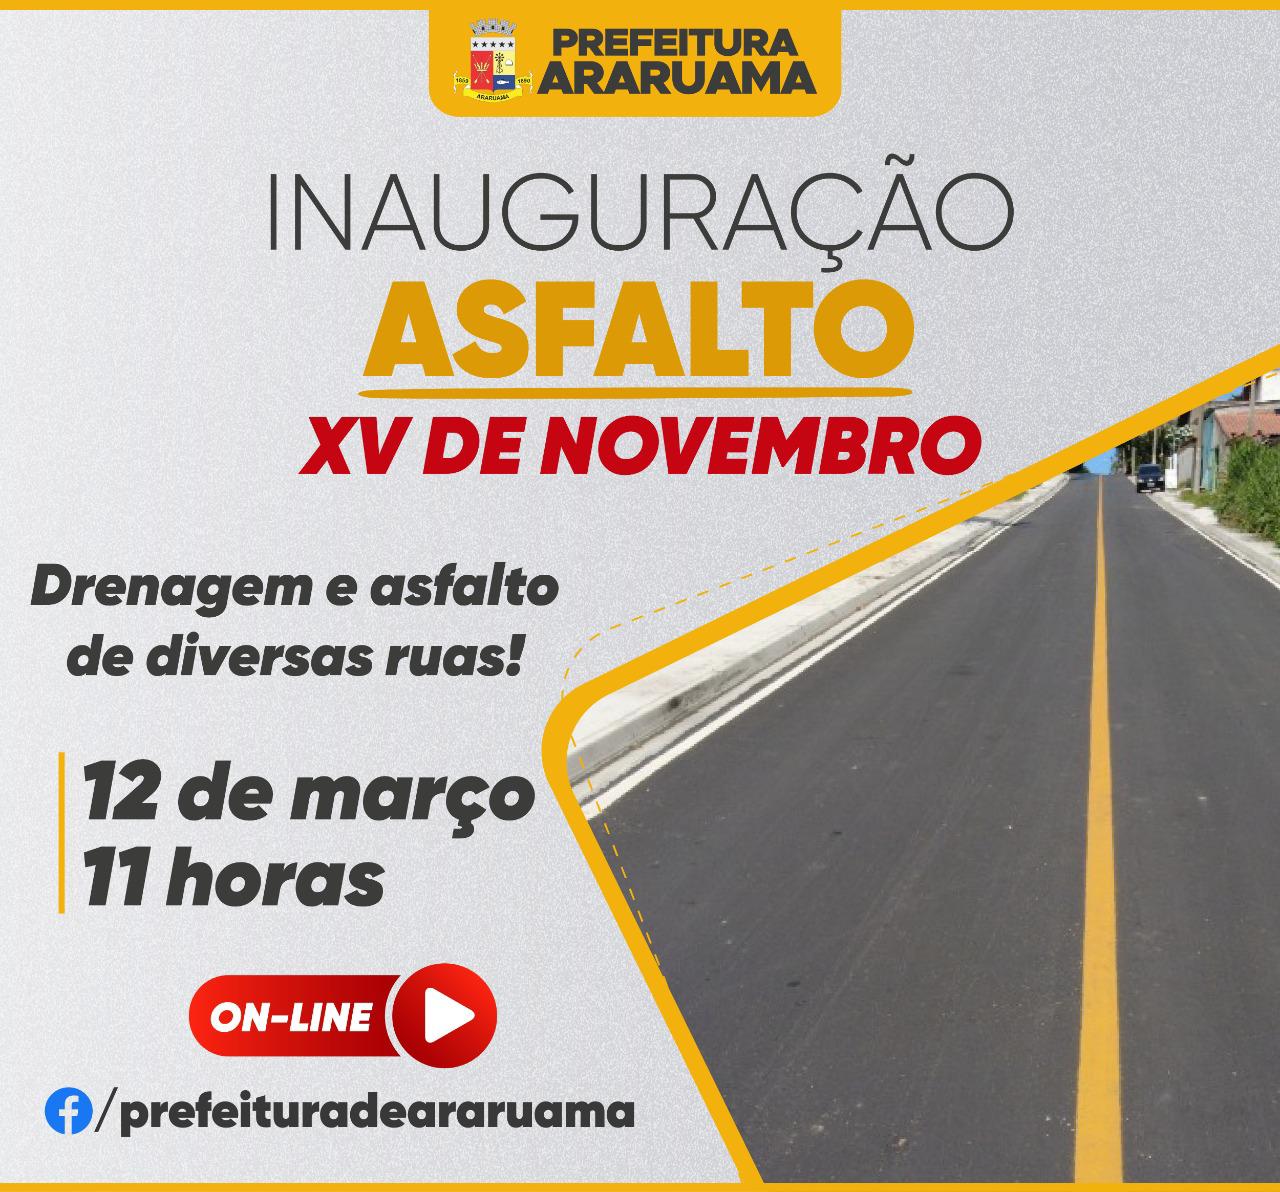 Prefeitura de Araruama vai entregar obras de drenagem e asfaltamento no bairro XV de Novembro na sexta-feira